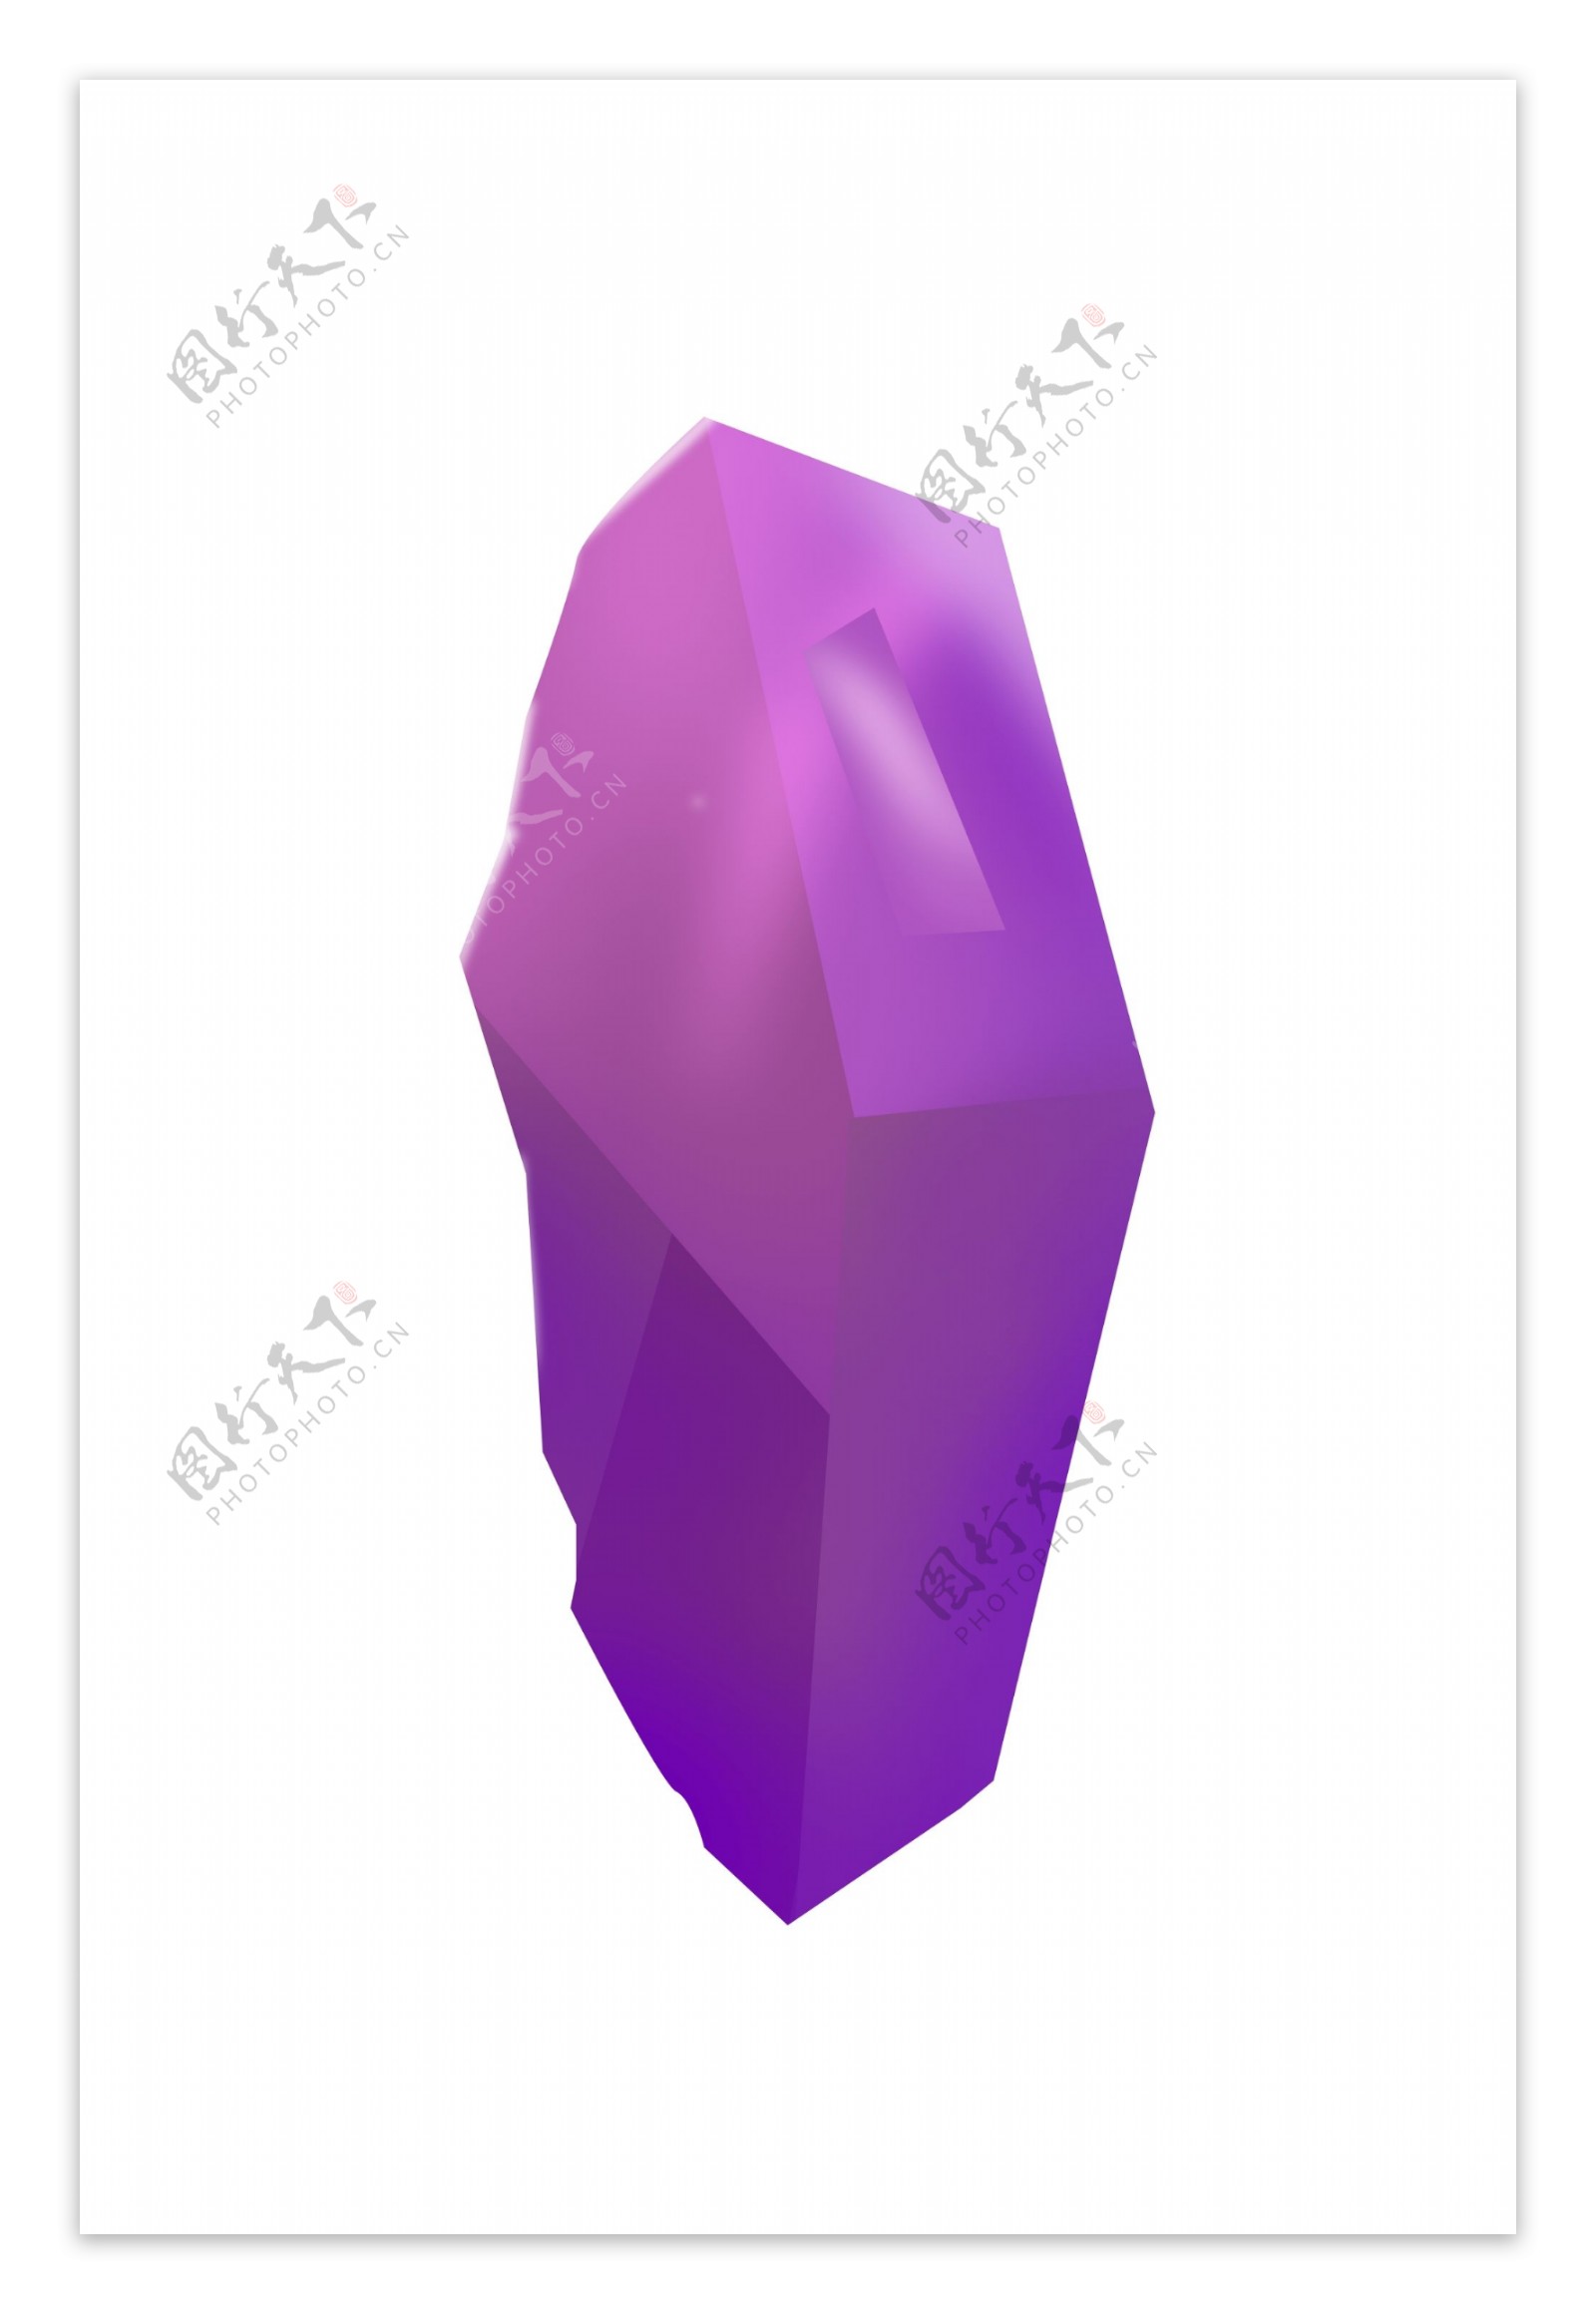 一颗手绘的紫色宝石